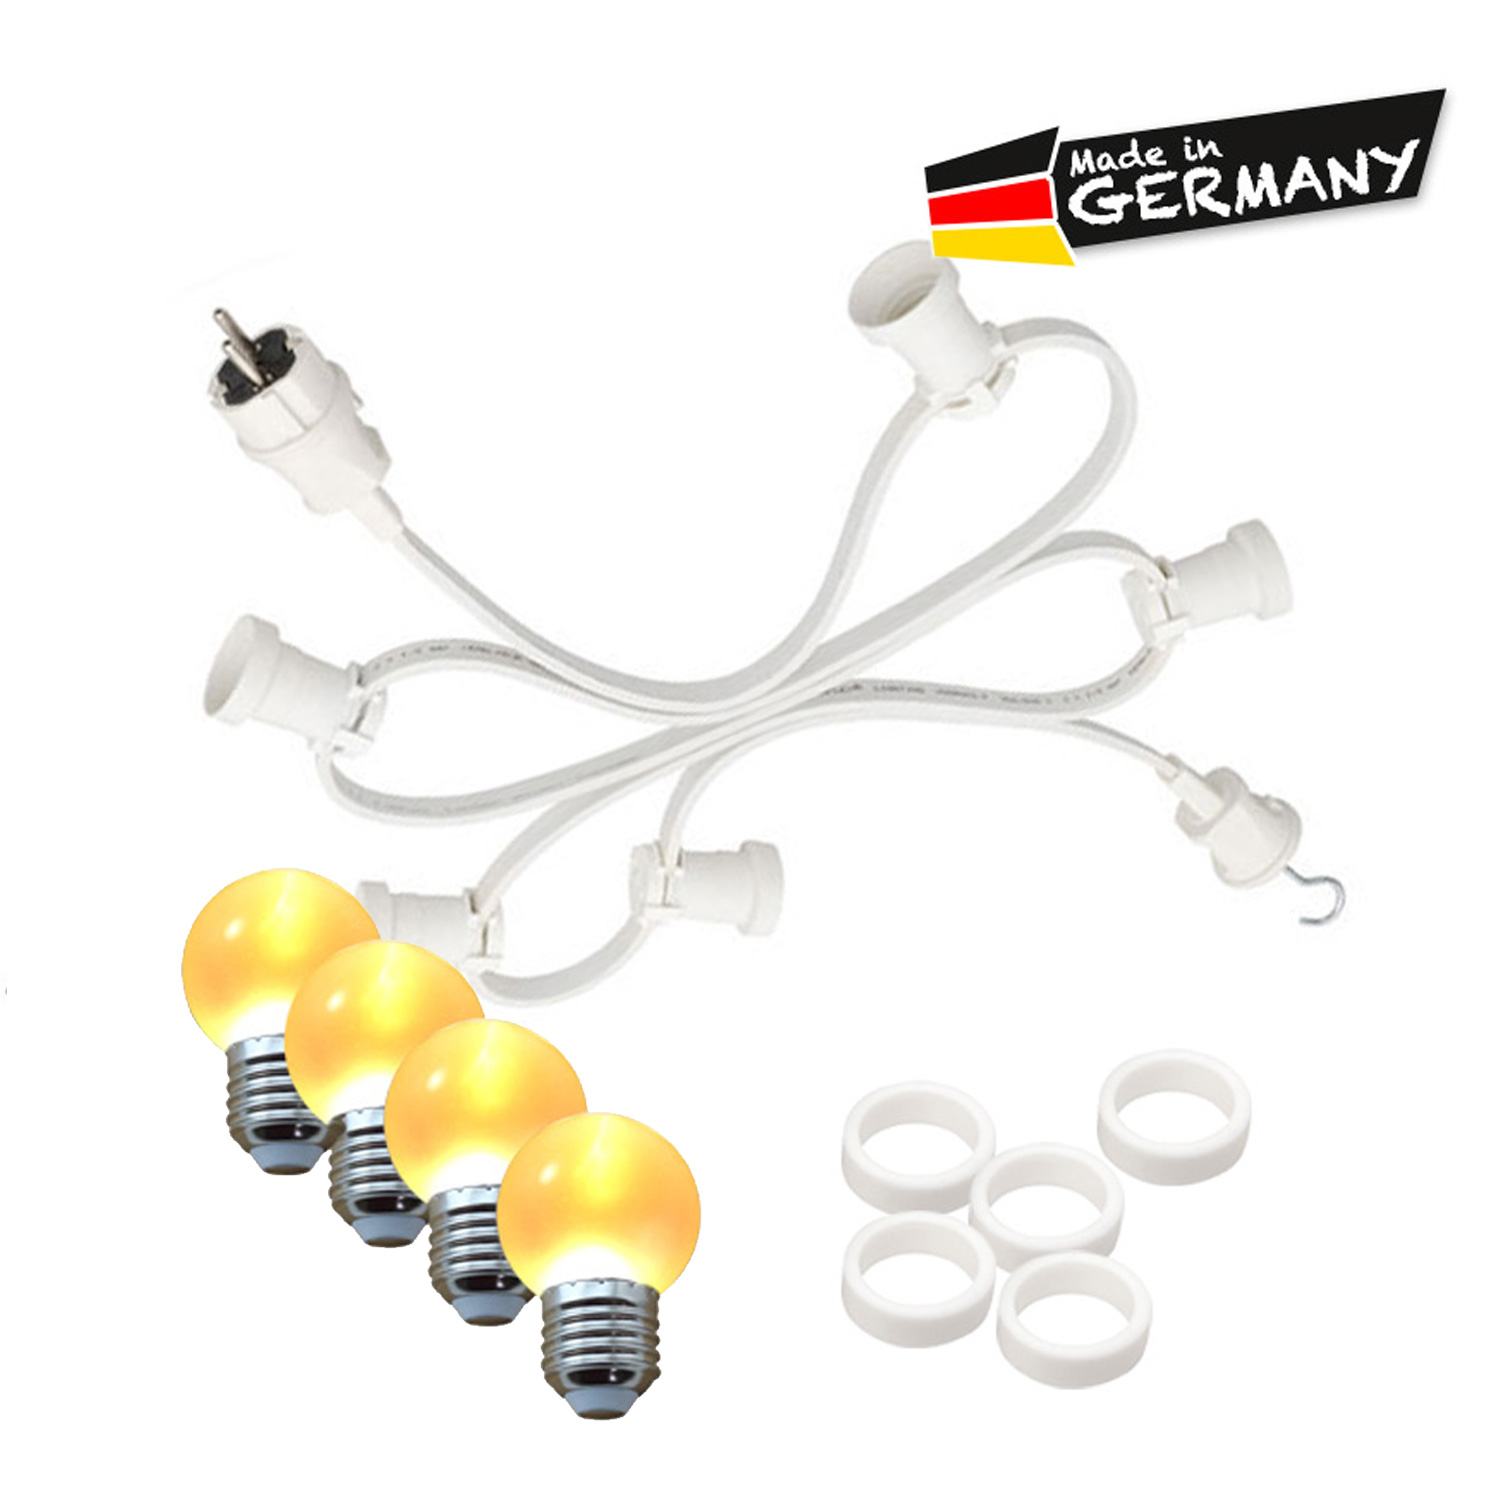 Illu-/Partylichterkette 20m - Außenlichterkette - Made in Germany - 20 x ultra-warmweiße LED Kugeln